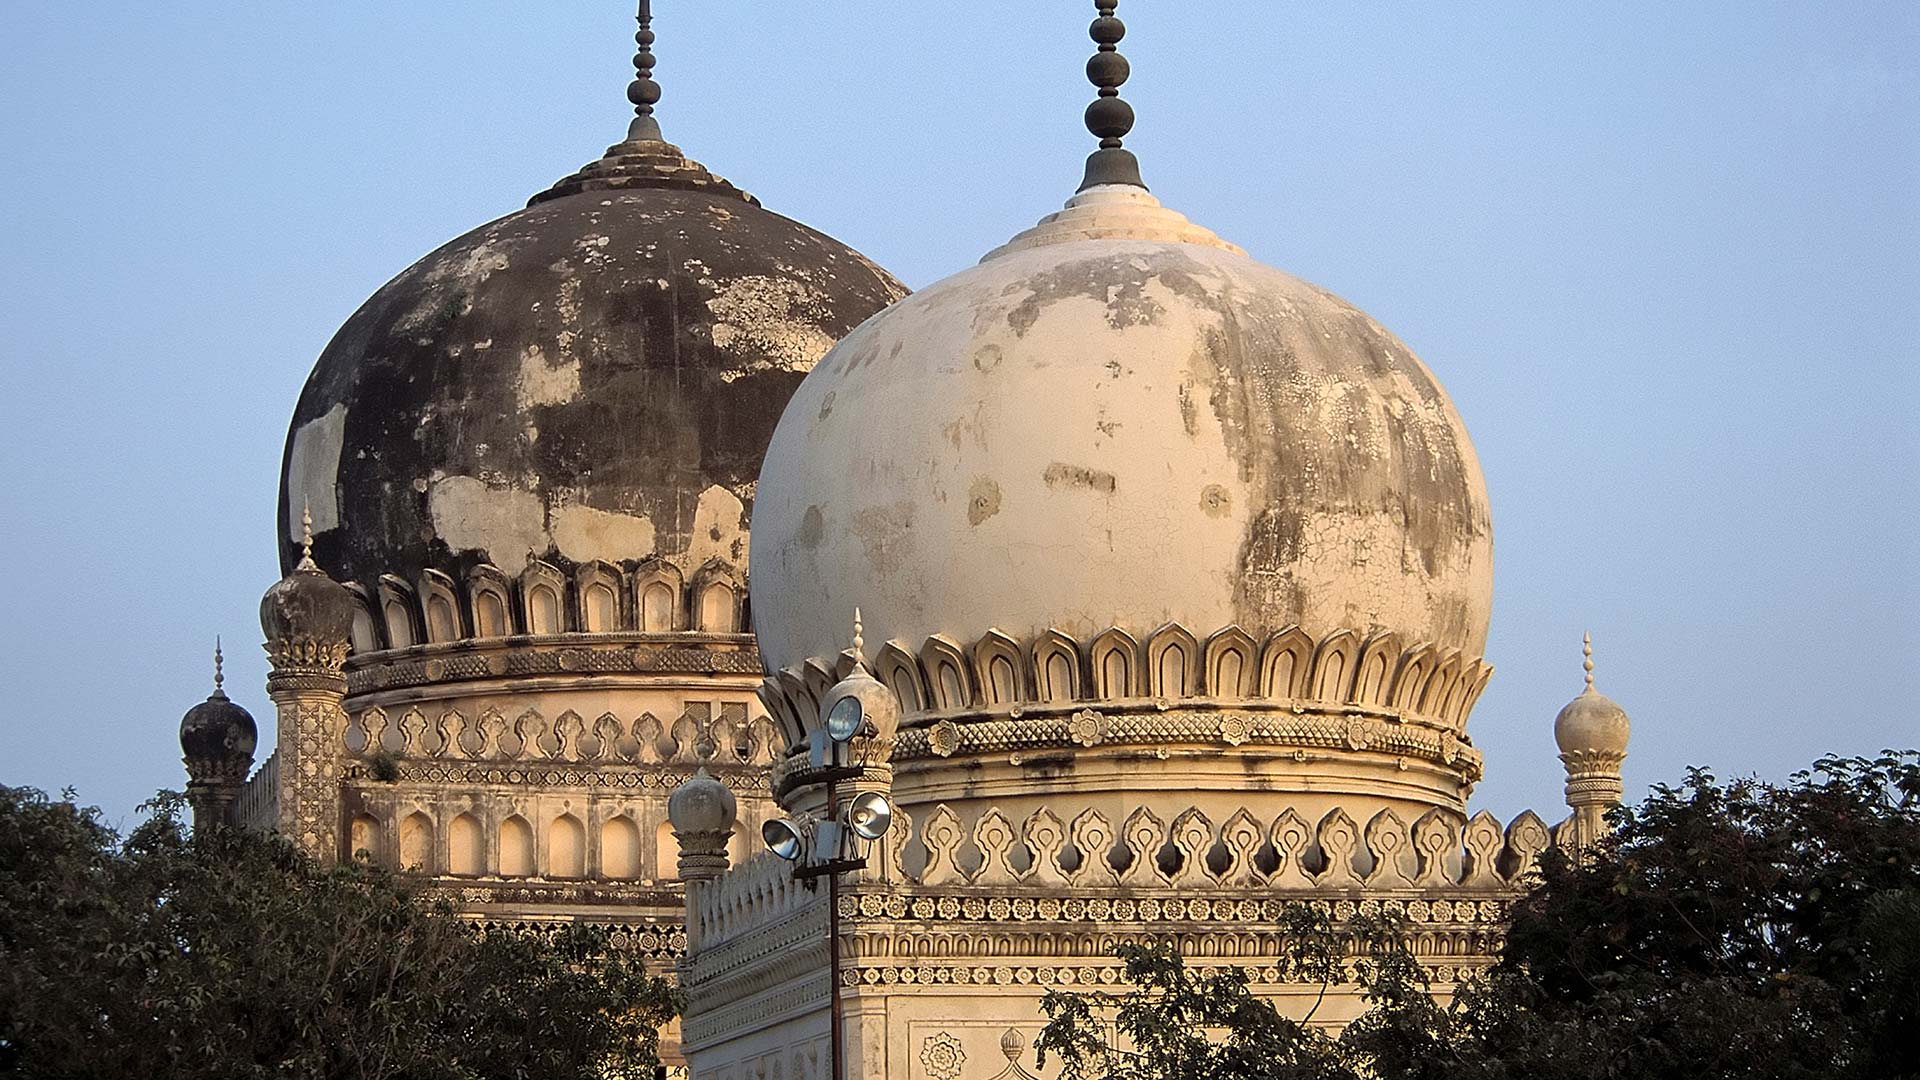 Qutub Shahi Tombs in Hyderabad, India